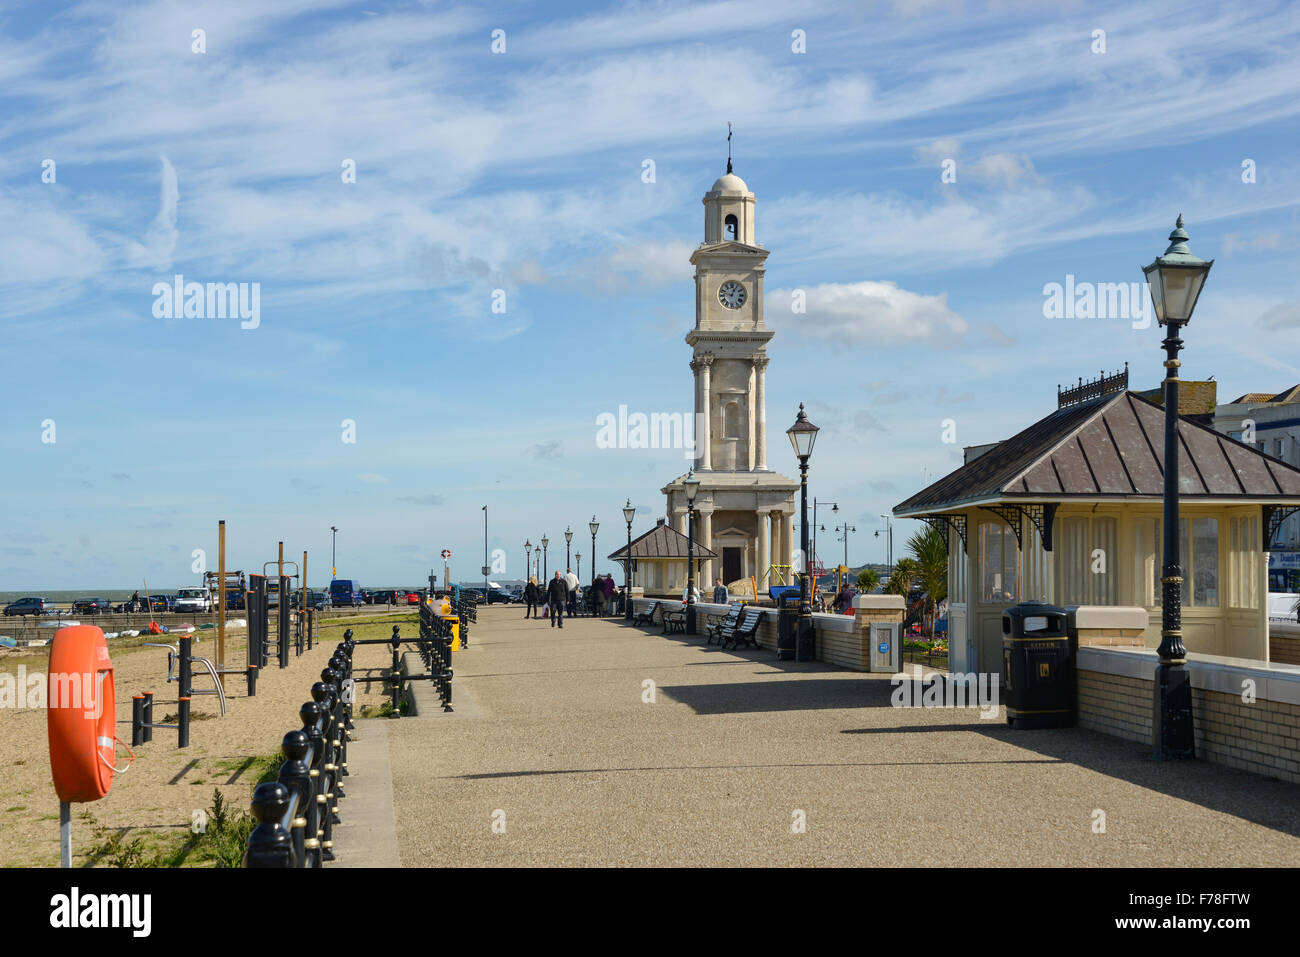 Promenade de la plage et de l'Horloge, Herne Bay, Kent, Angleterre, Royaume-Uni Banque D'Images